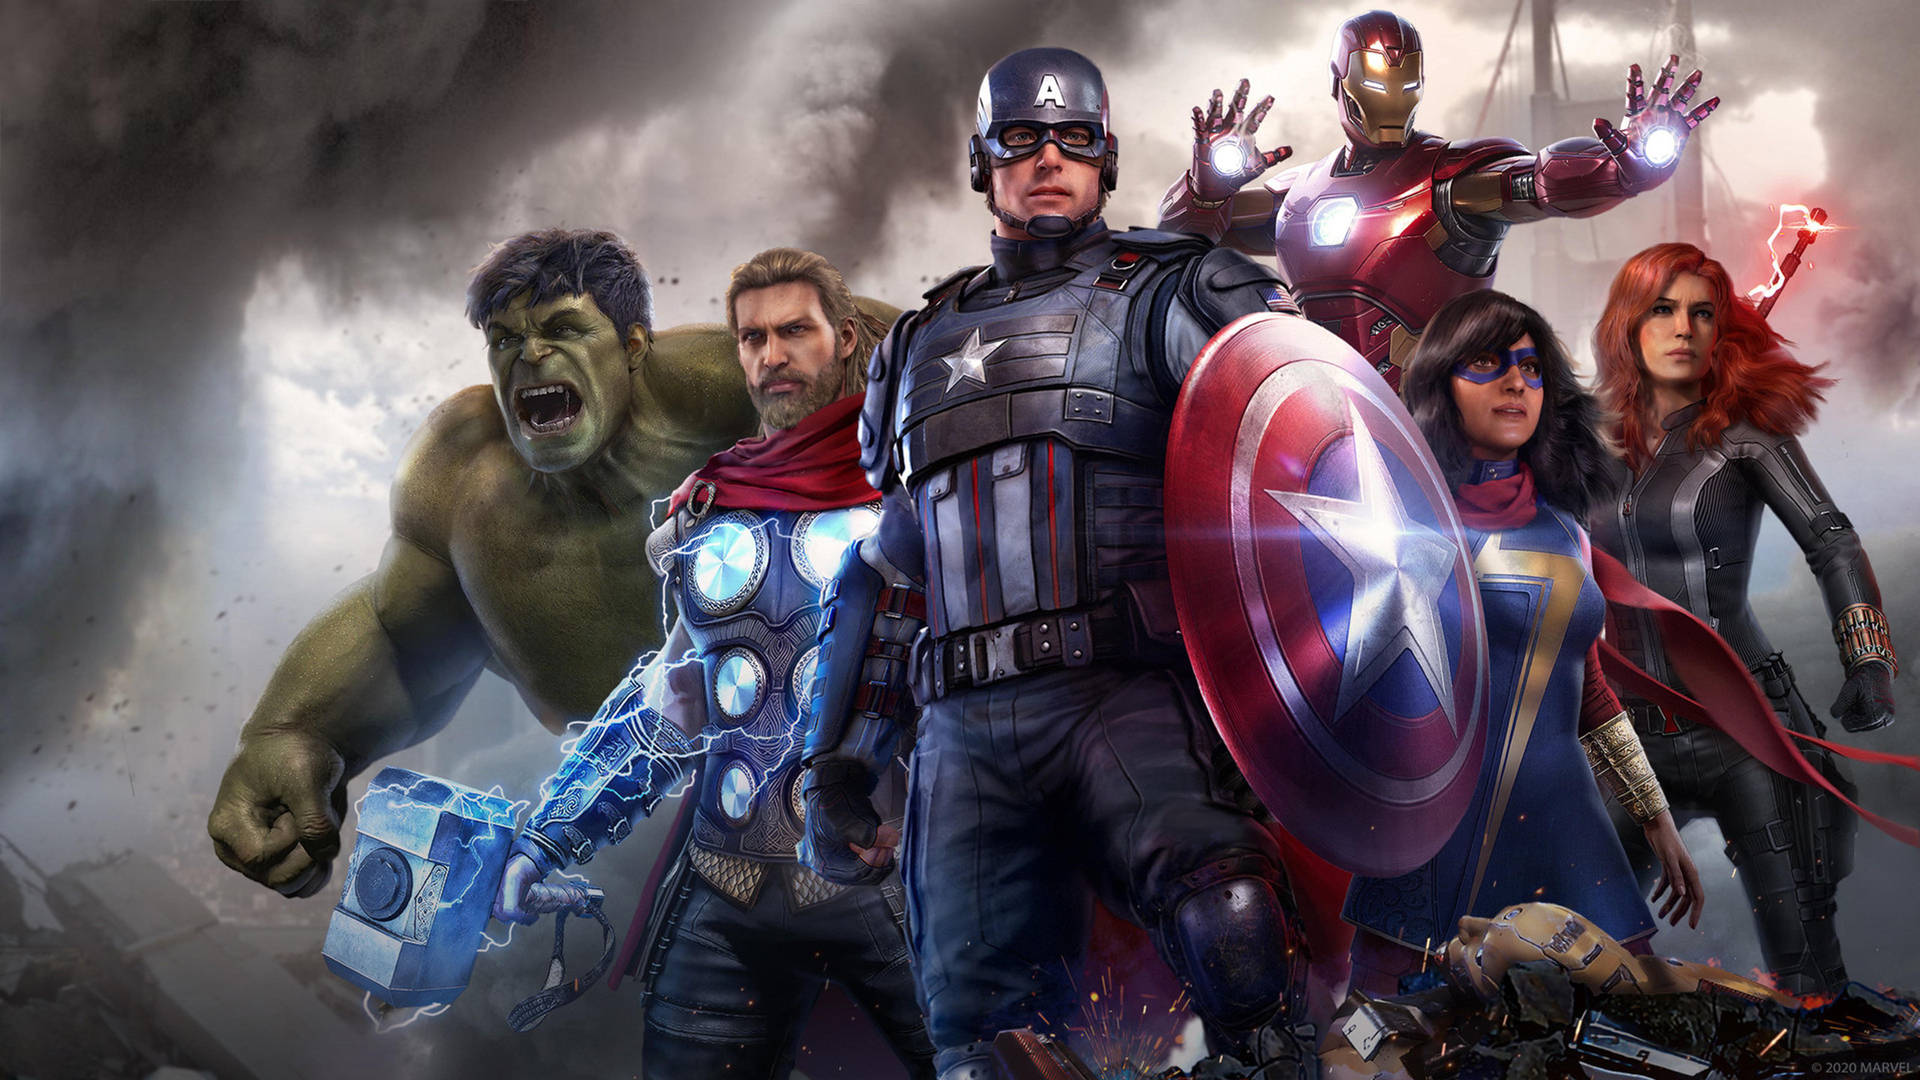 Deursprungliga Superhjältarna - The Avengers Wallpaper